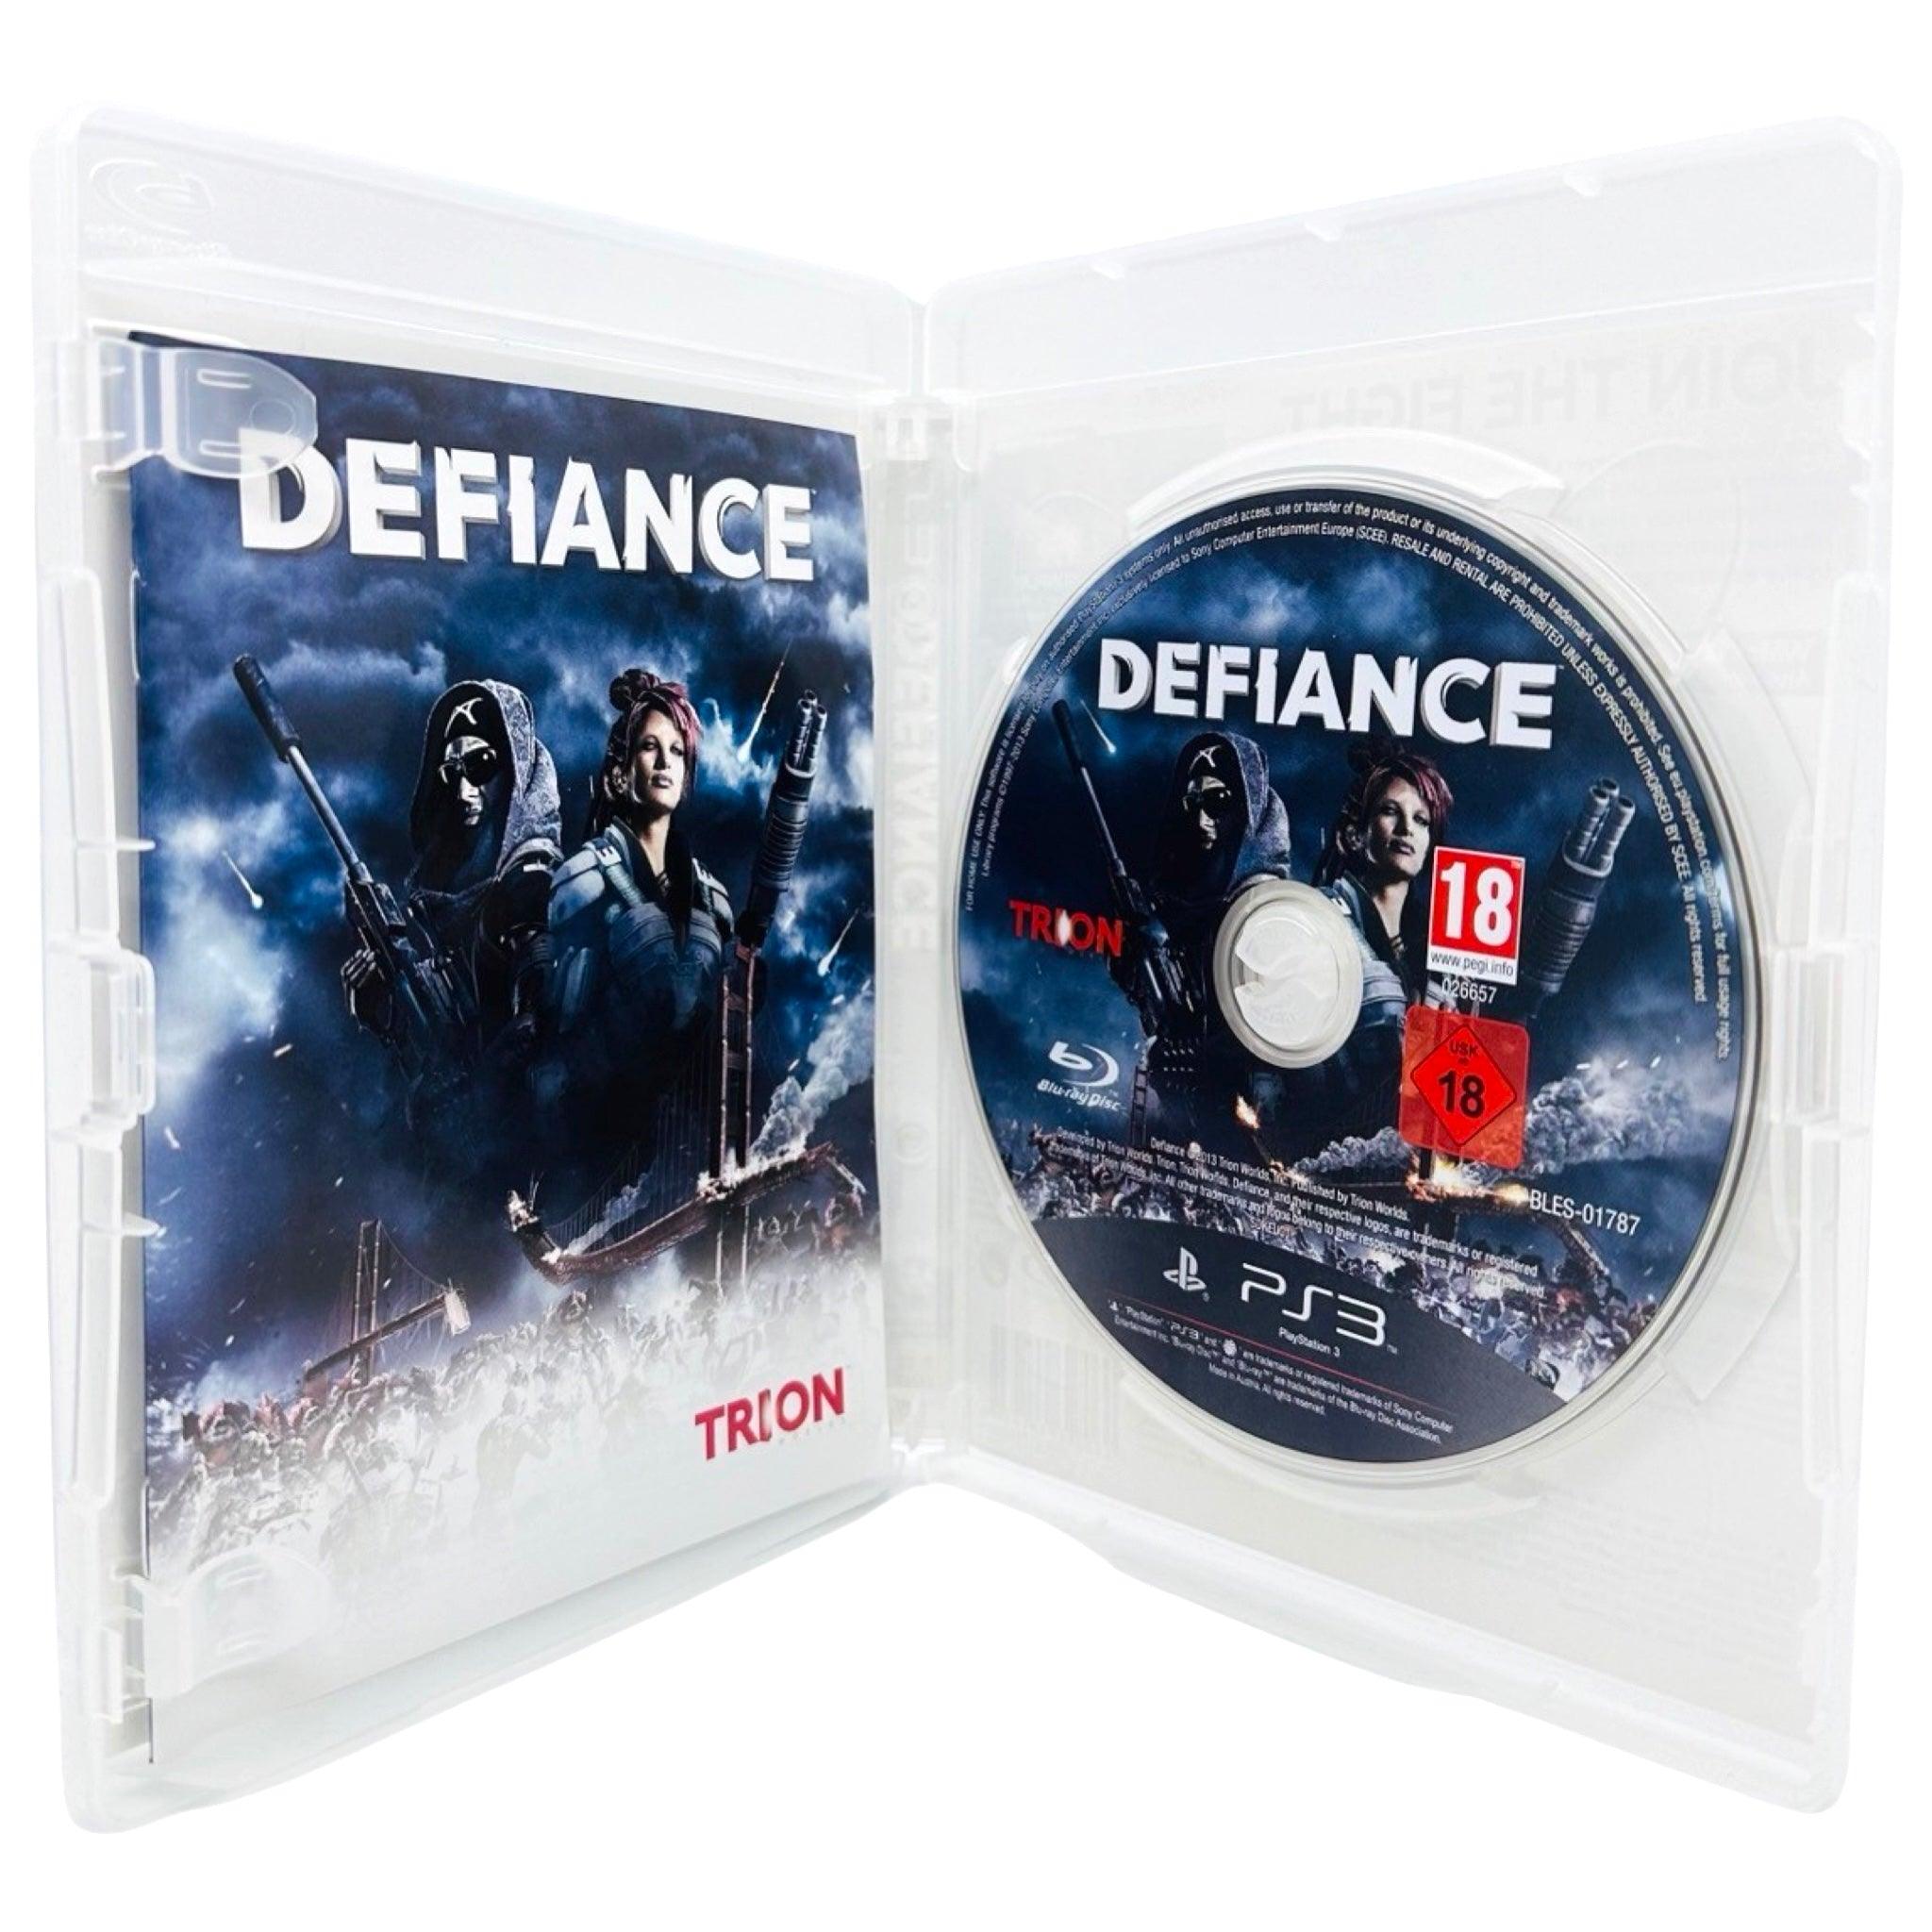 PS3: Defiance - RetroGaming.no